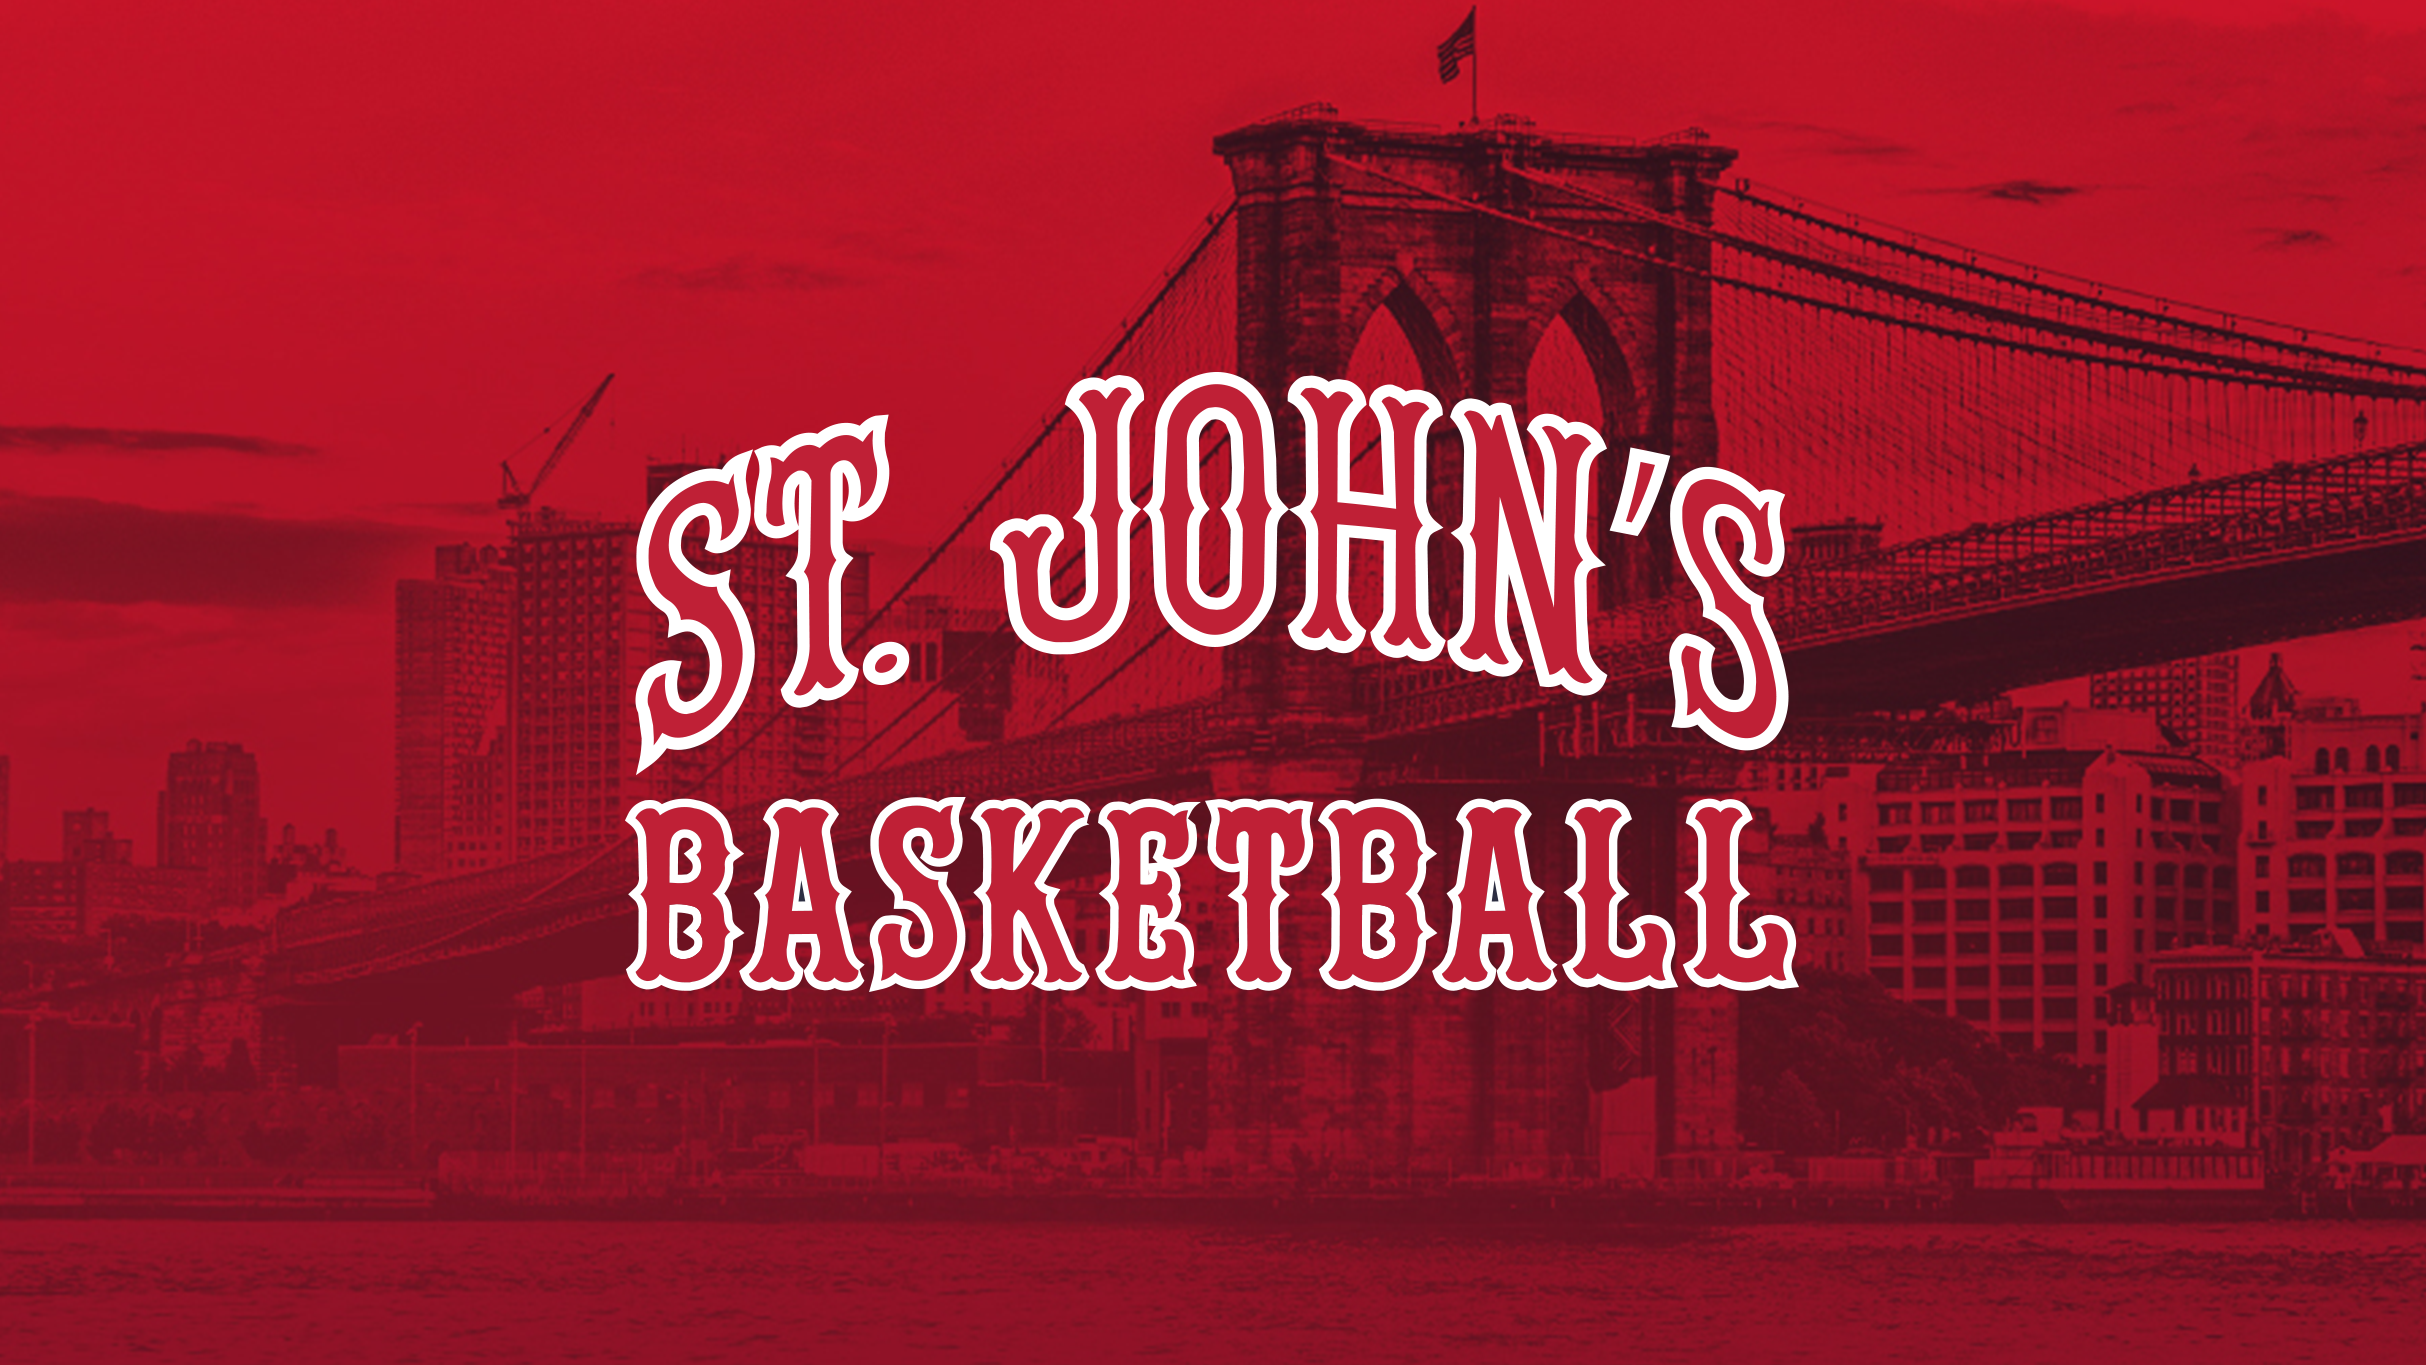 St. John's Red Storm Men's Basketball V. Villanova in New York promo photo for Chase Cardholder Preferred Seating presale offer code